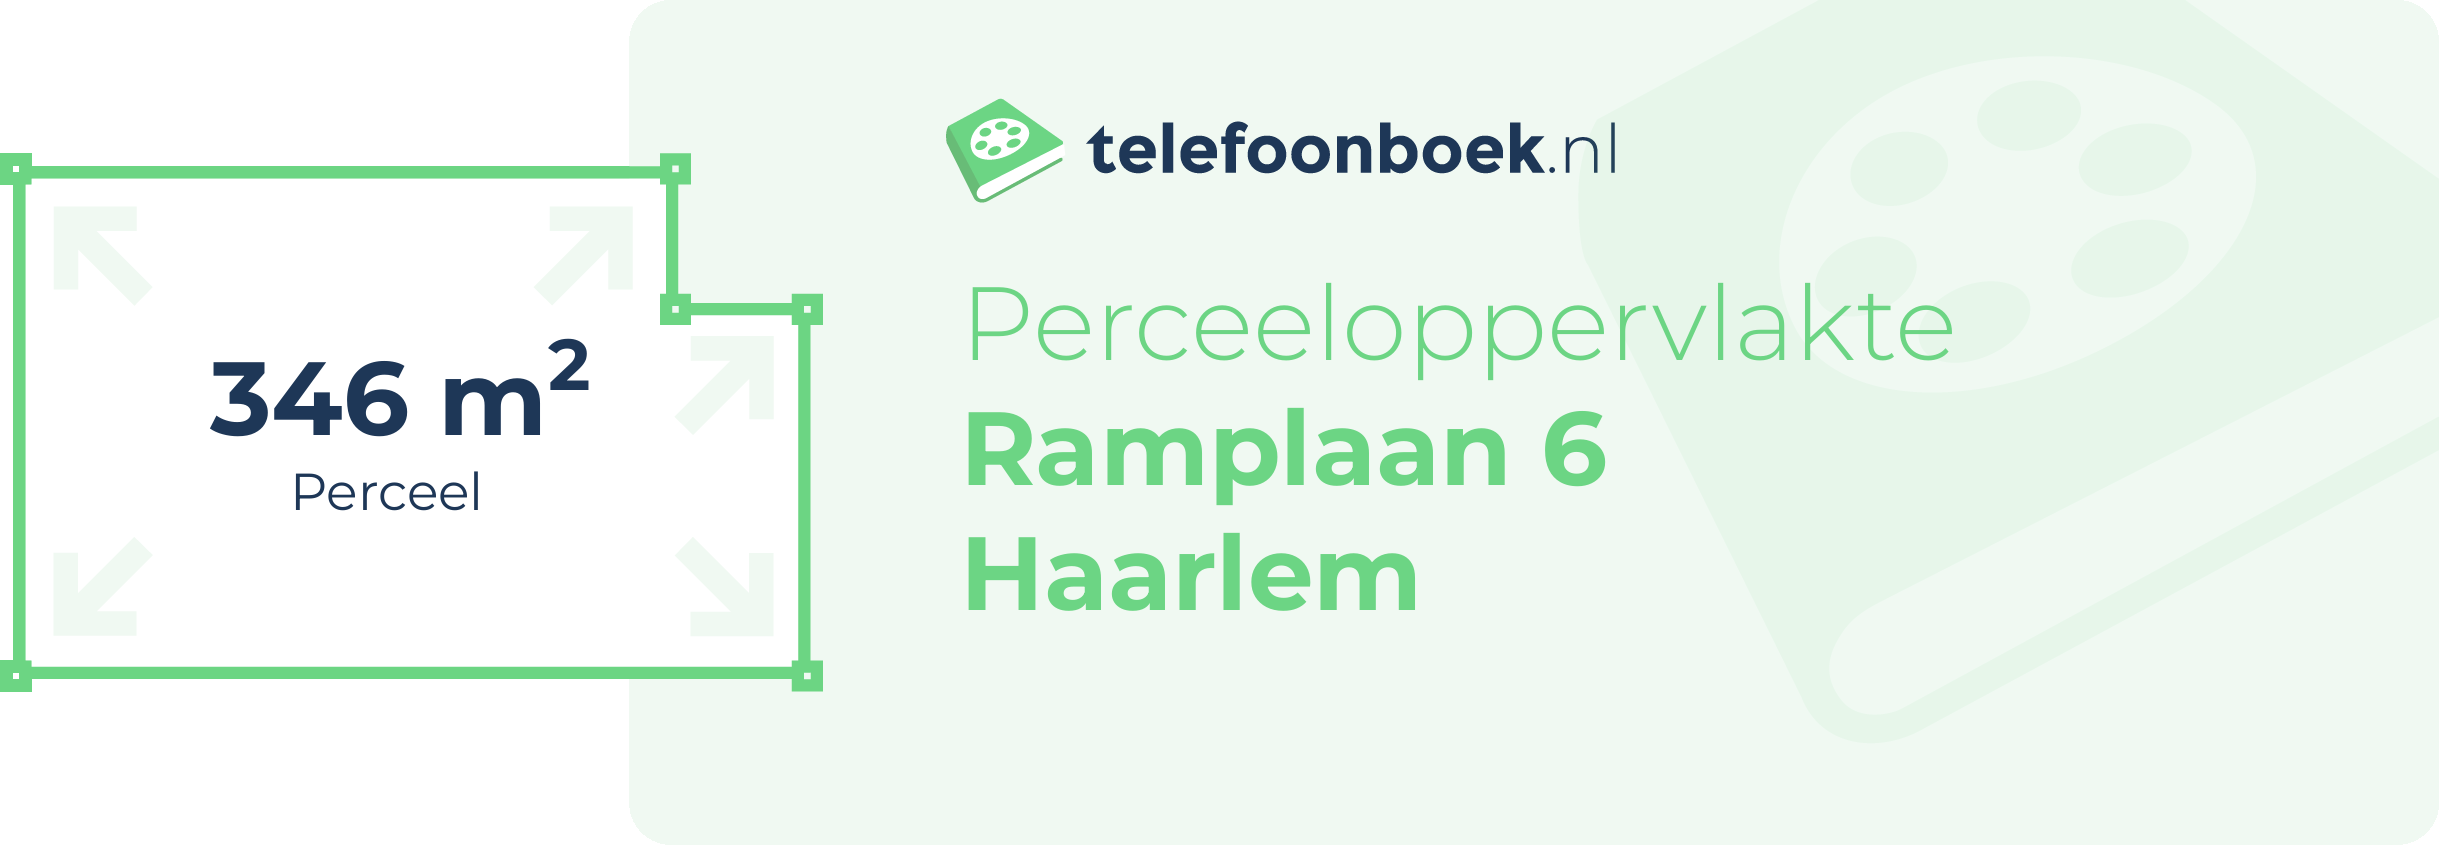 Perceeloppervlakte Ramplaan 6 Haarlem